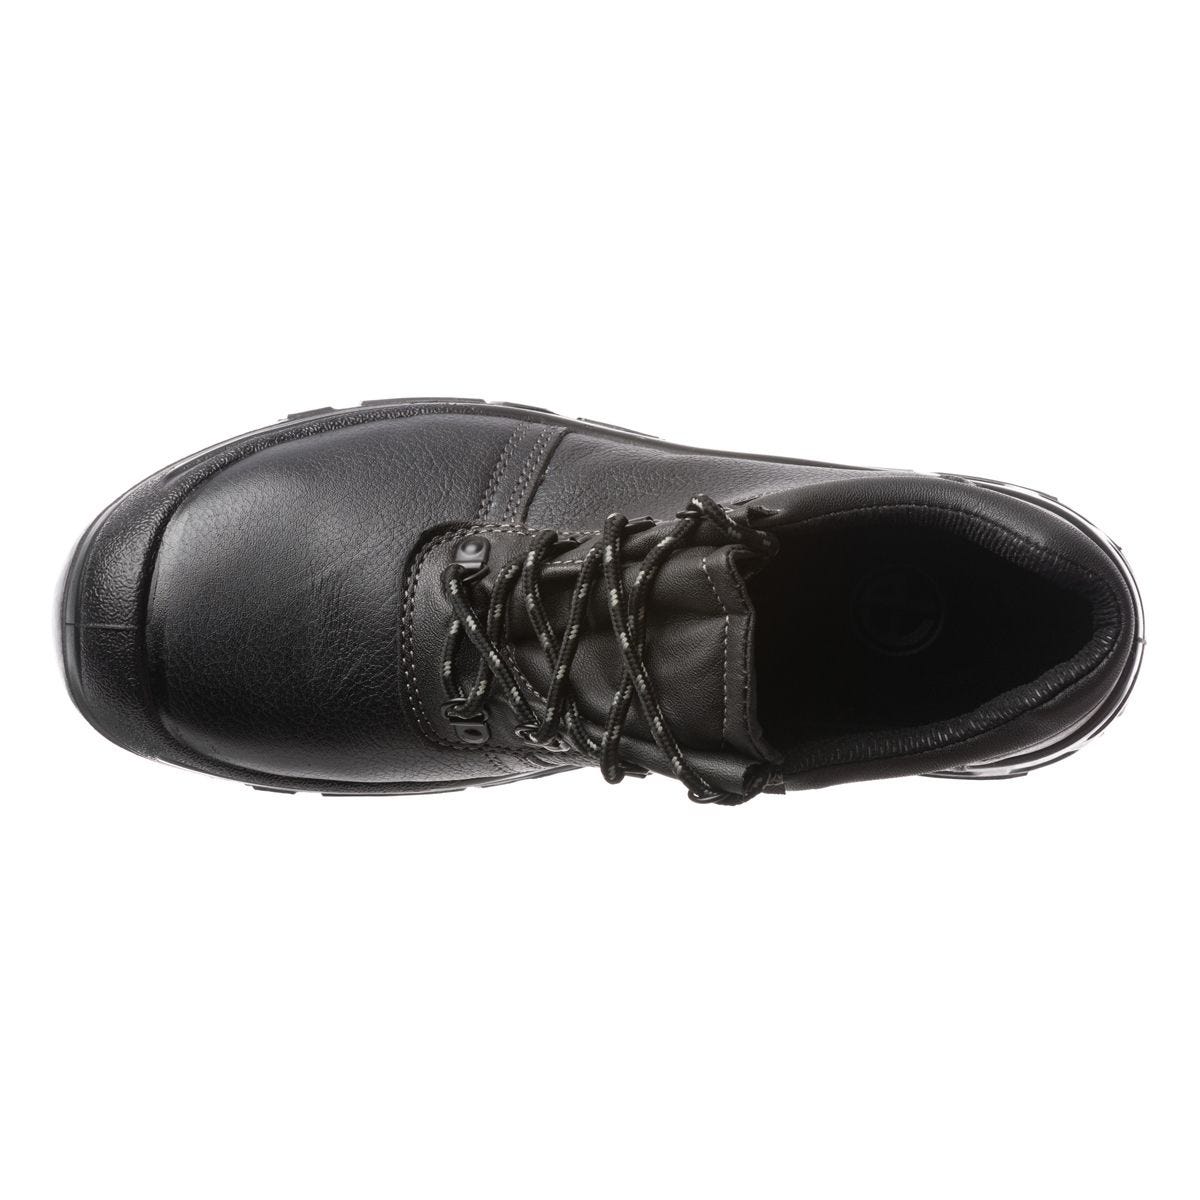 Chaussures de sécurité basses Azurite II S3 ESD noir - Coverguard - Taille 39 1